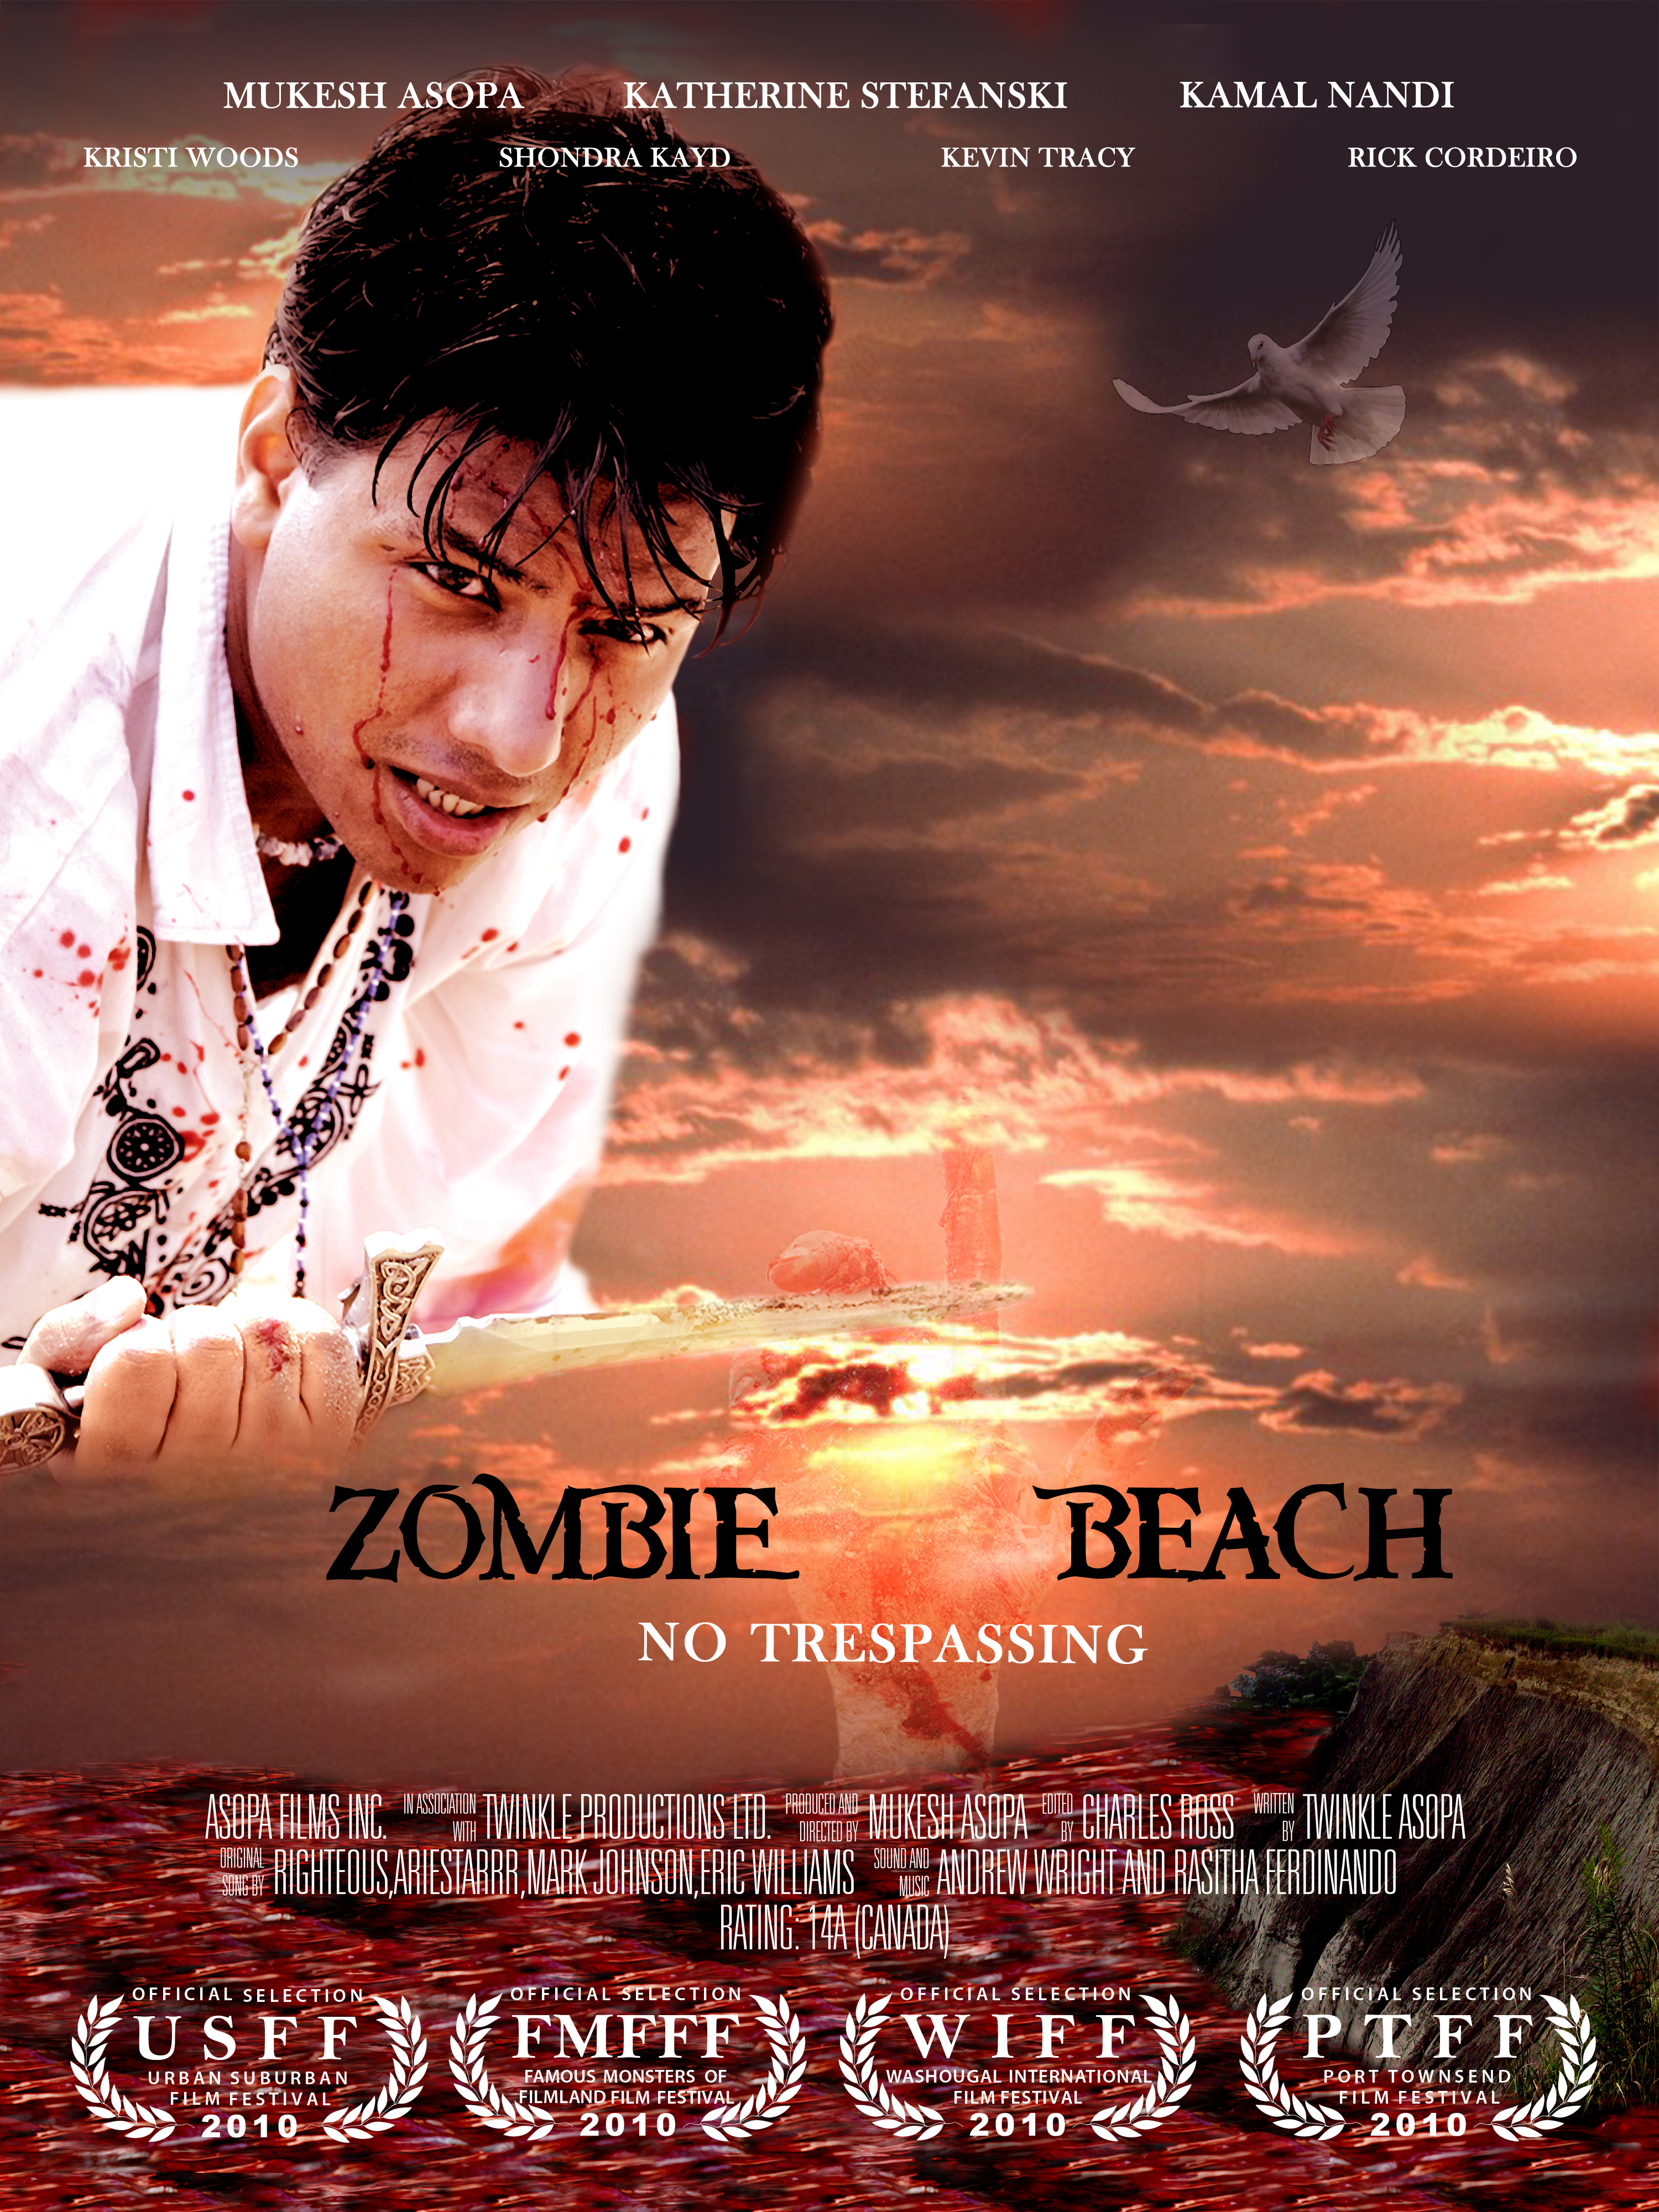 Zombie Beach Award Winning Film Poster.